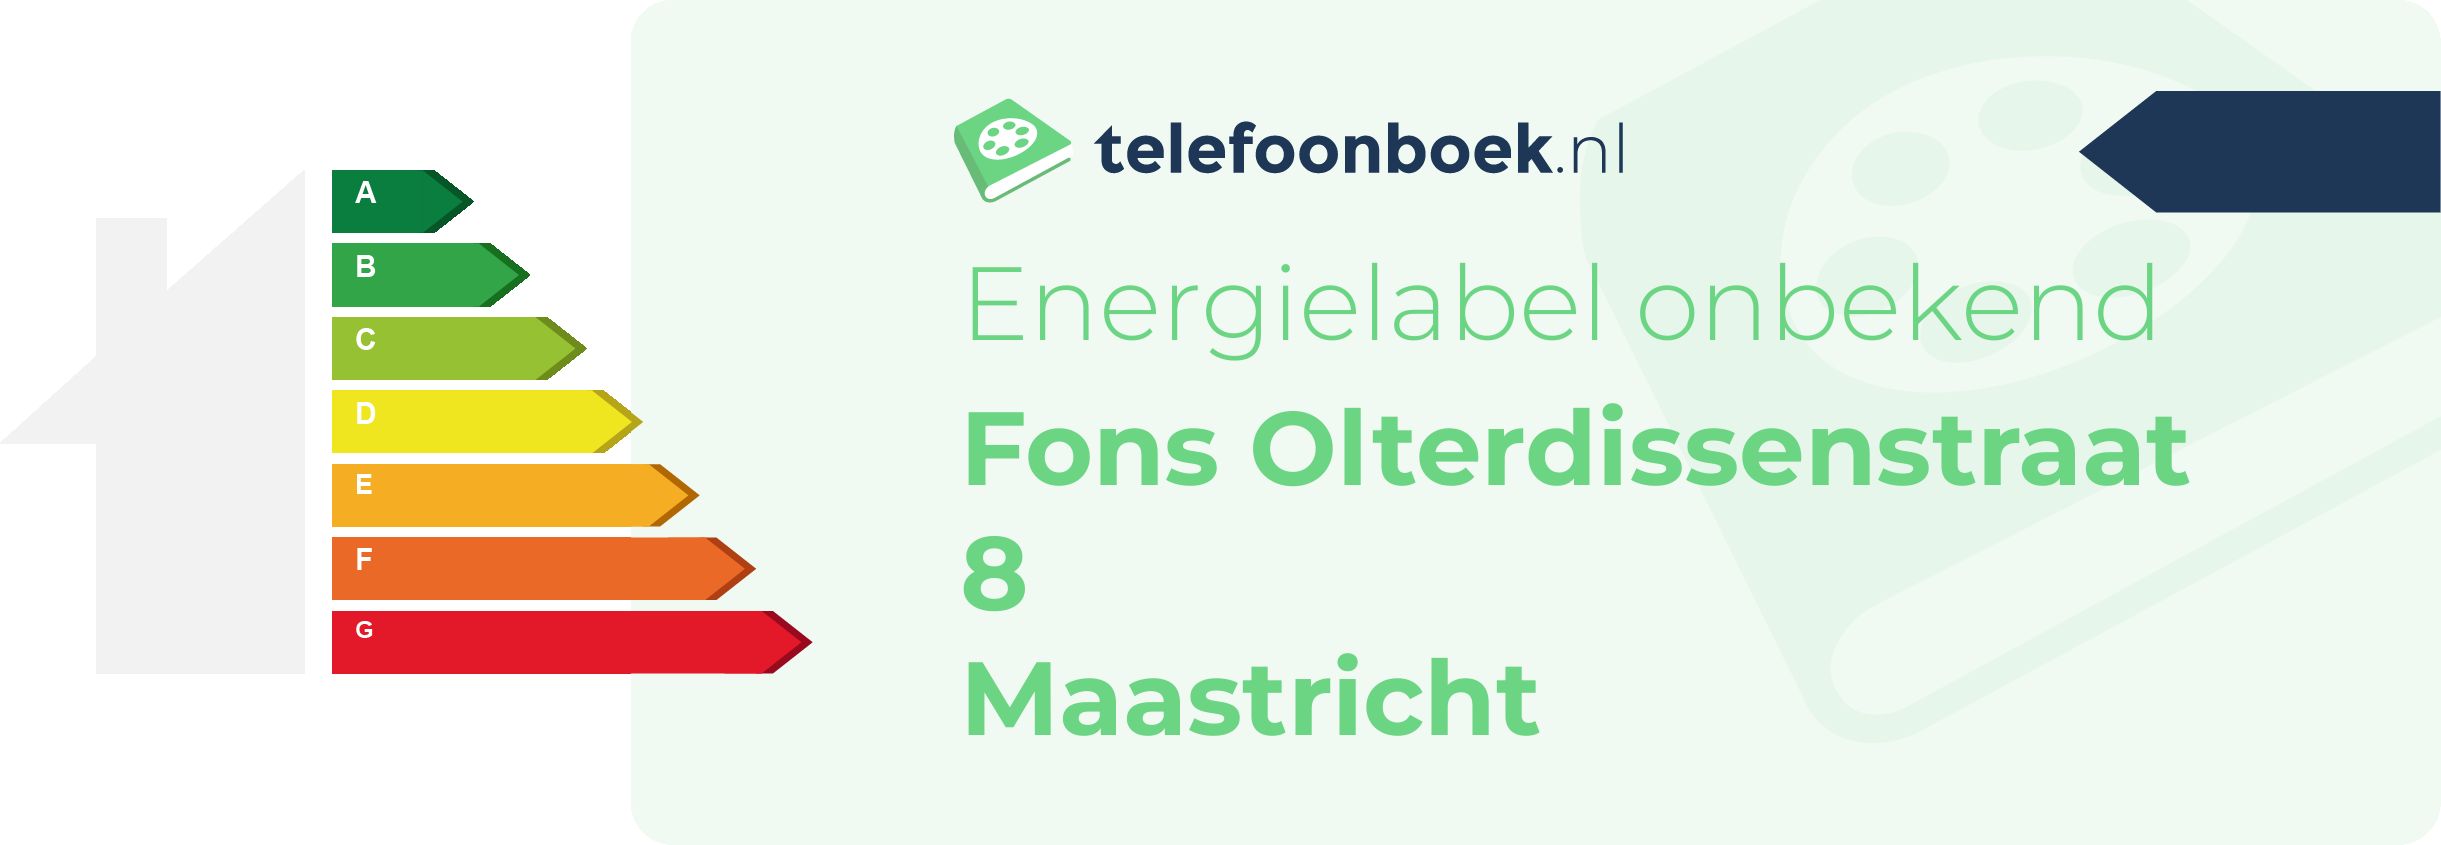 Energielabel Fons Olterdissenstraat 8 Maastricht